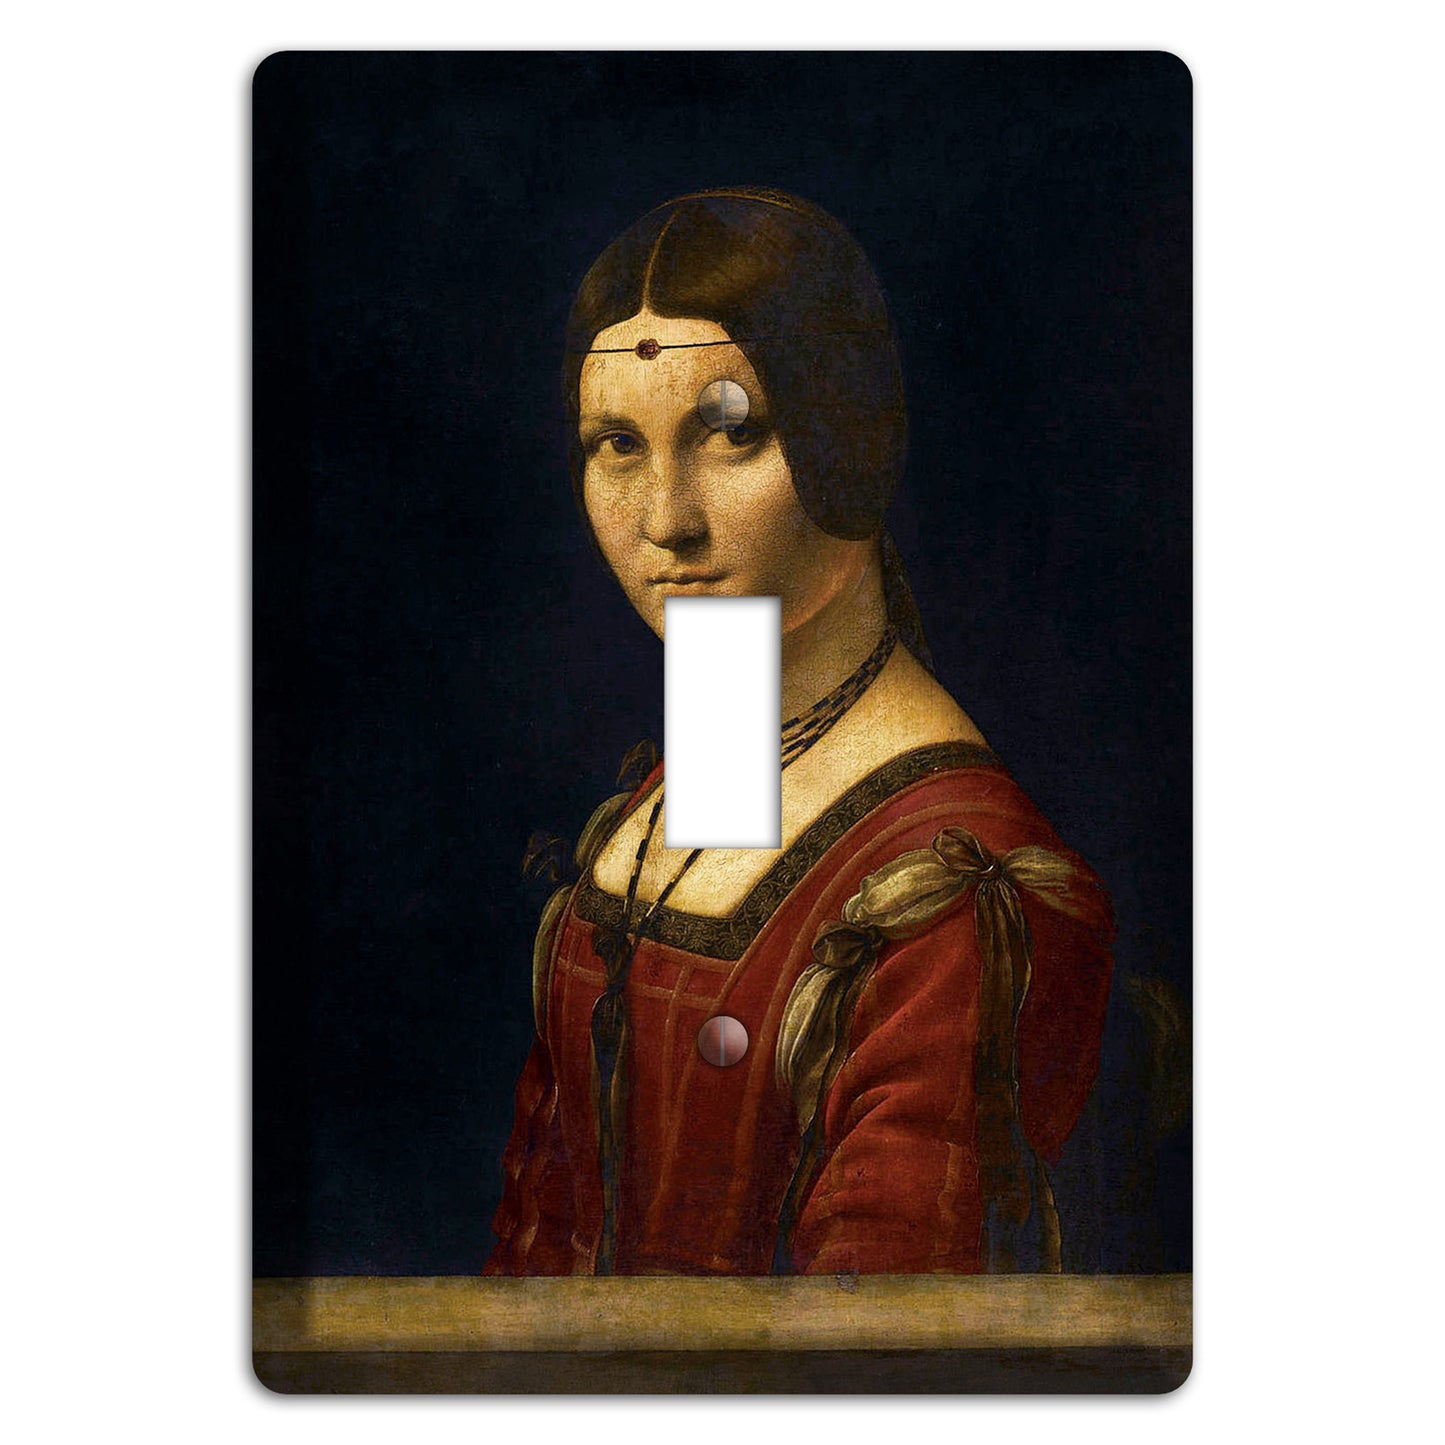 Da Vinci - La Belle Ferronierre Cover Plates